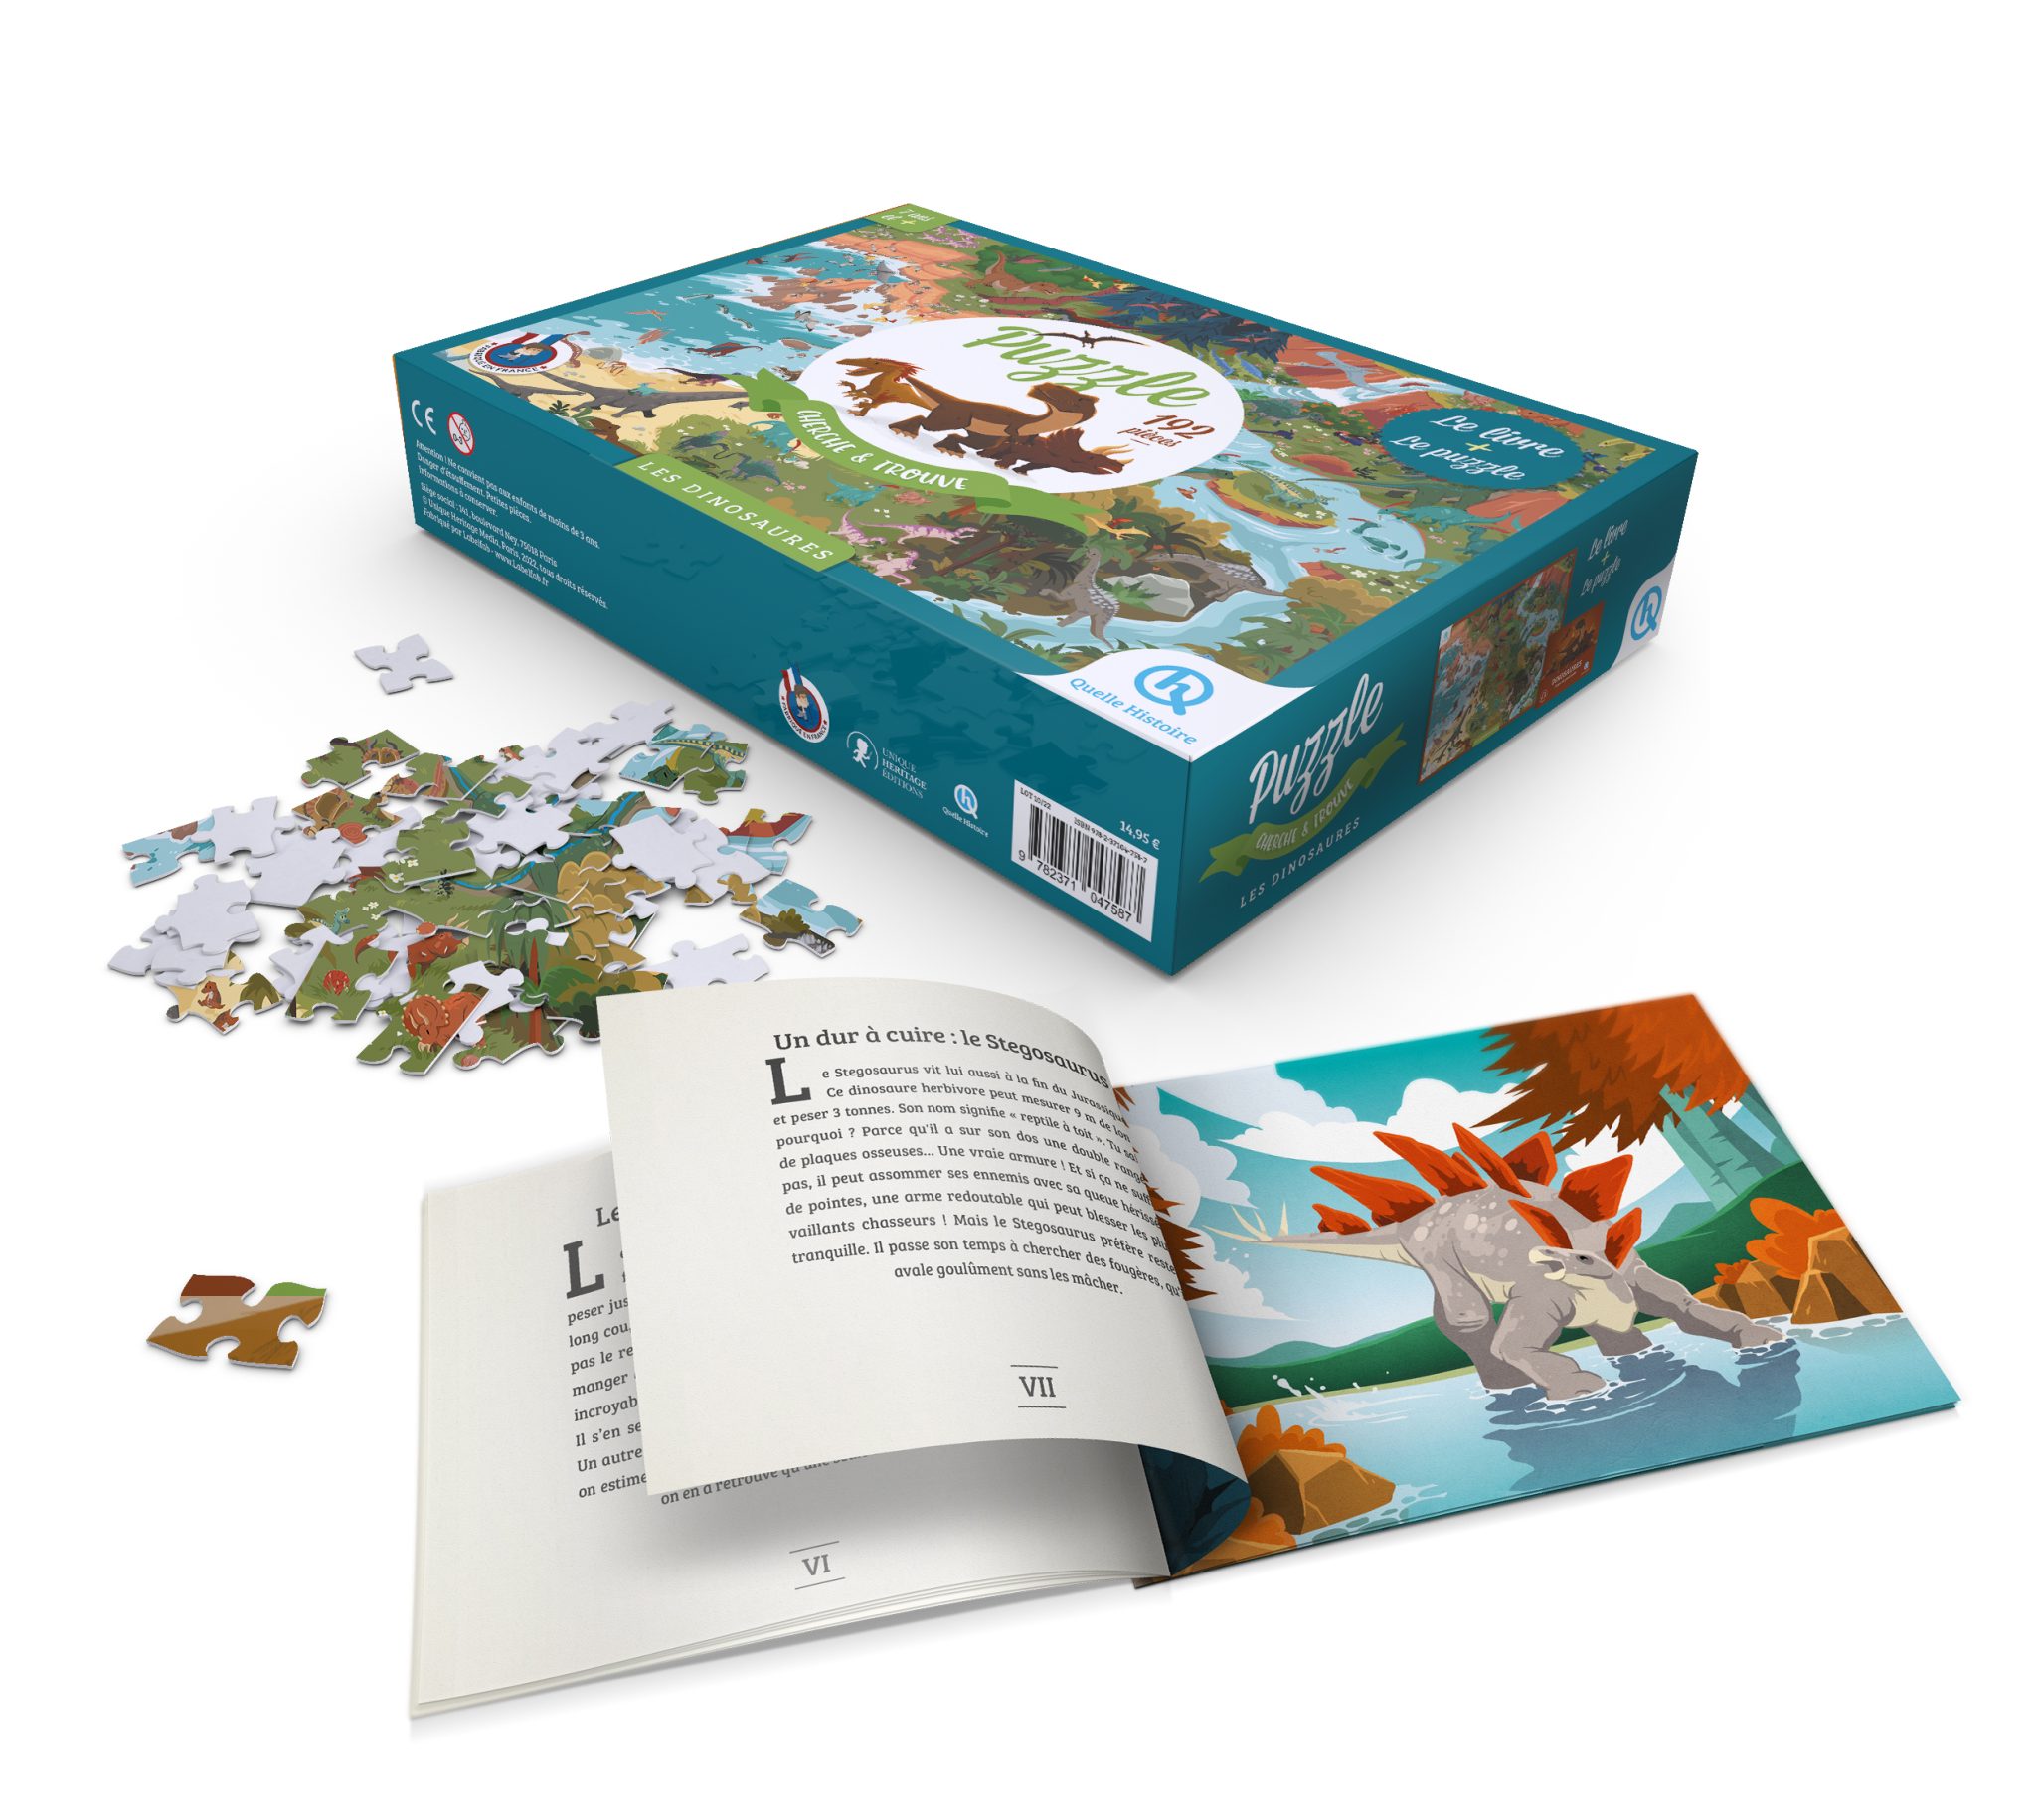 Les dinosaures - Livre + Puzzle 40 pièces - La Grande Récré